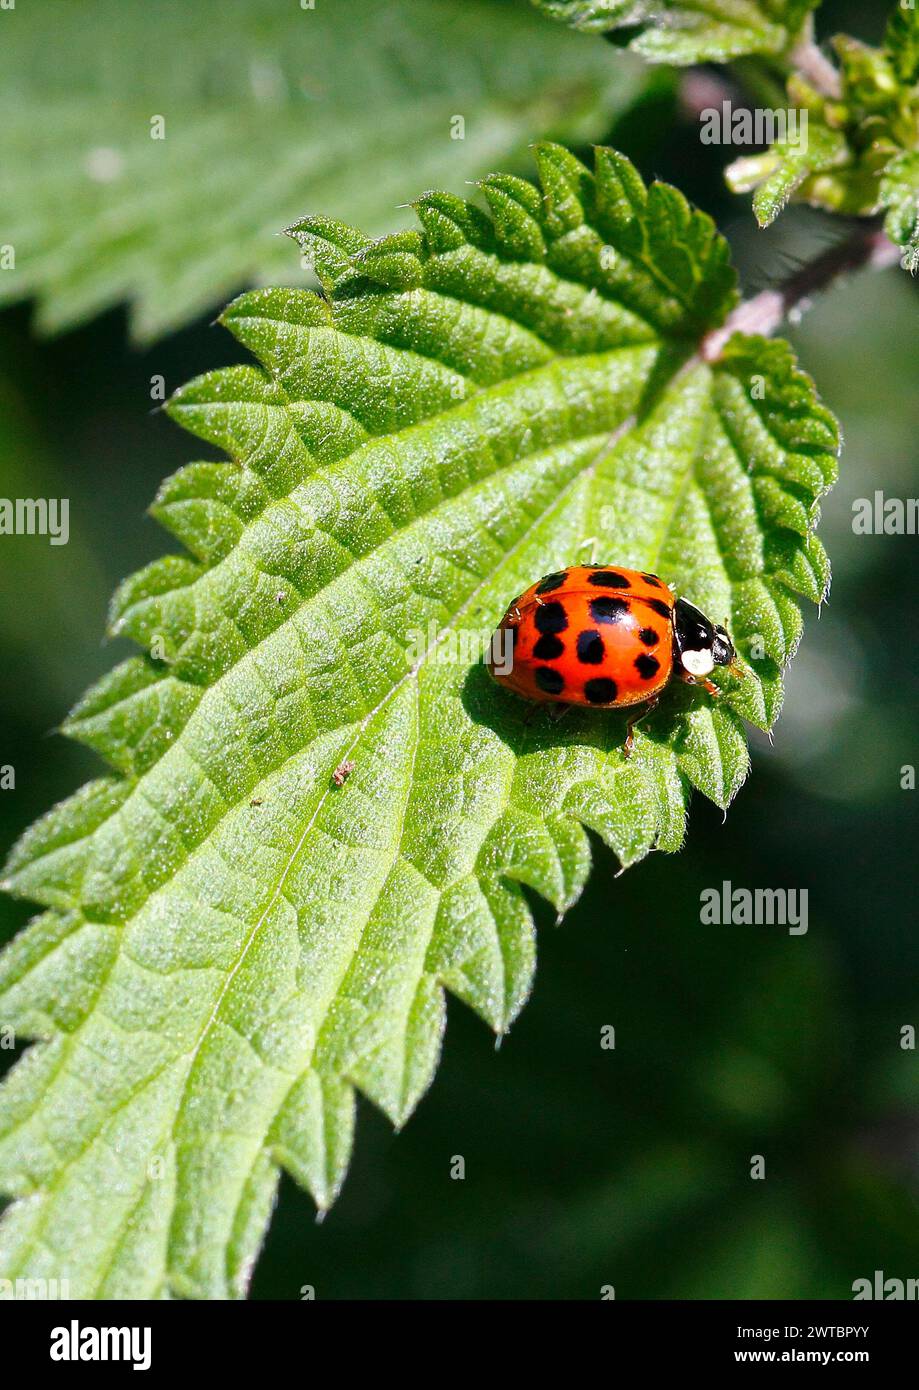 Asian lady beetle (Harmonia axyridis), multicoloured or harlequin ladybird on leaf, North Rhine-Westphalia, Germany Stock Photo